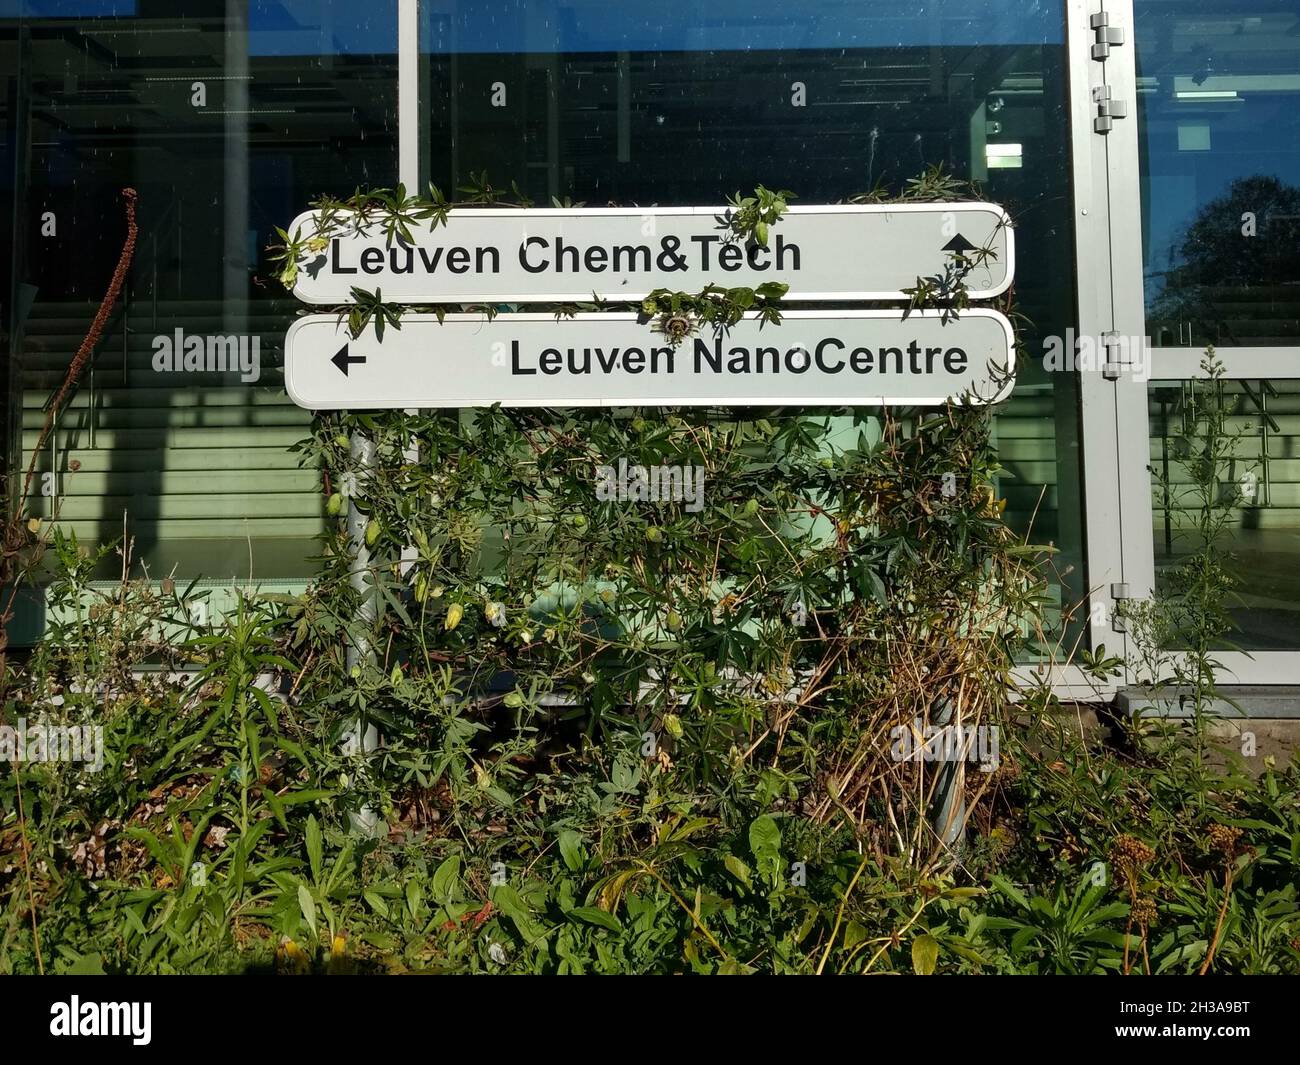 Schild für das Leuven Chem&Tech und Leuven NanoCenter mit Pflanzen bewachsen Stockfoto